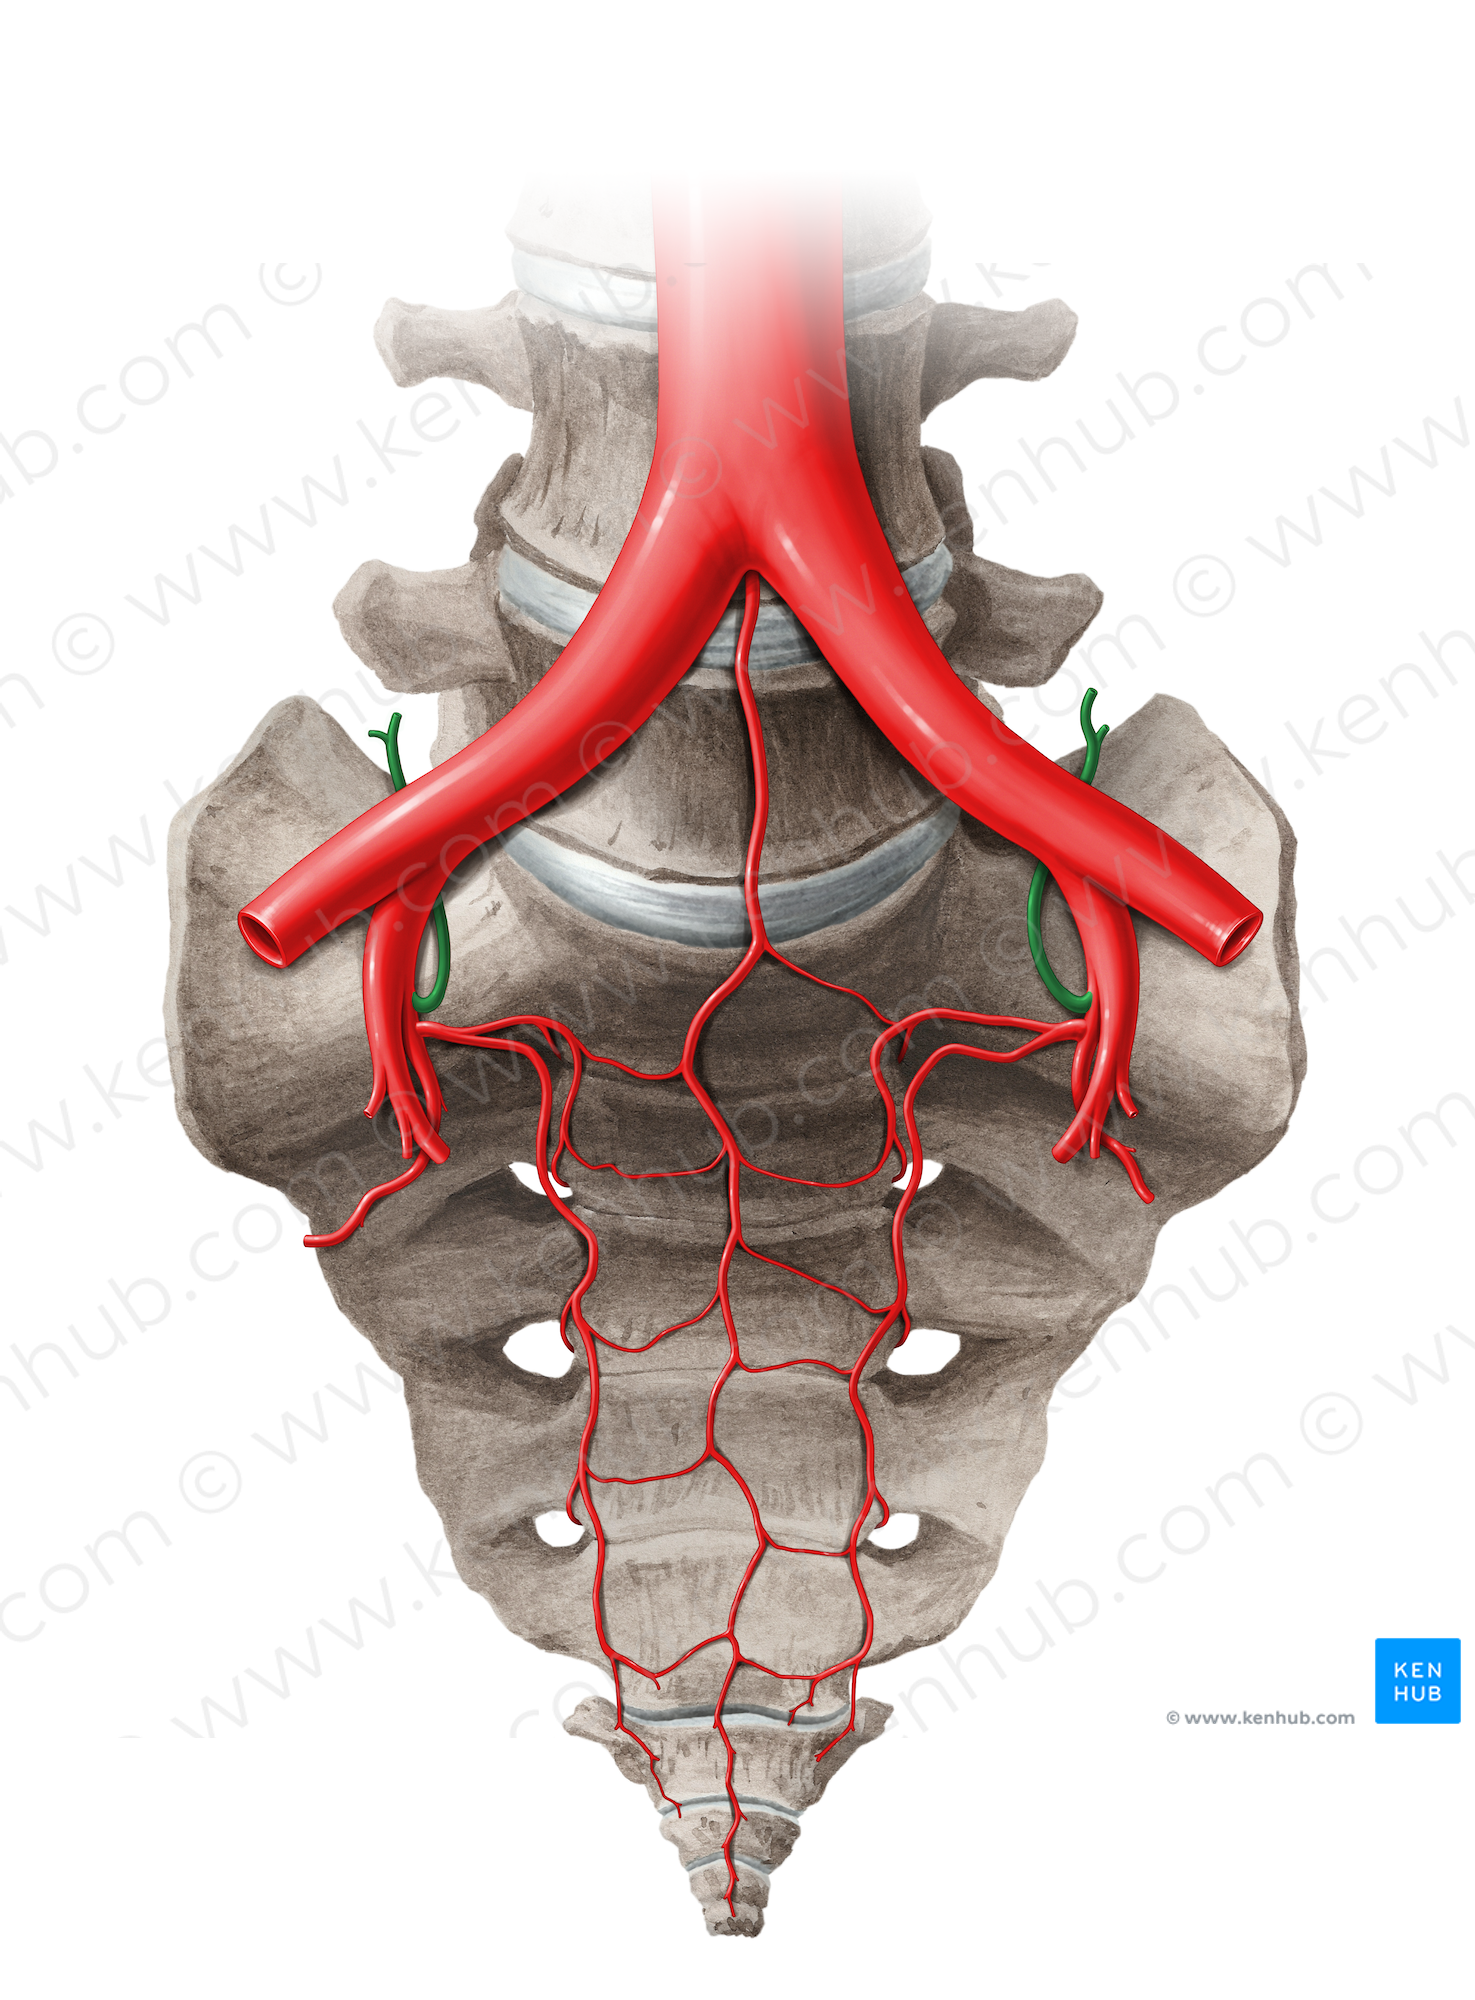 Iliolumbar artery (#14063)